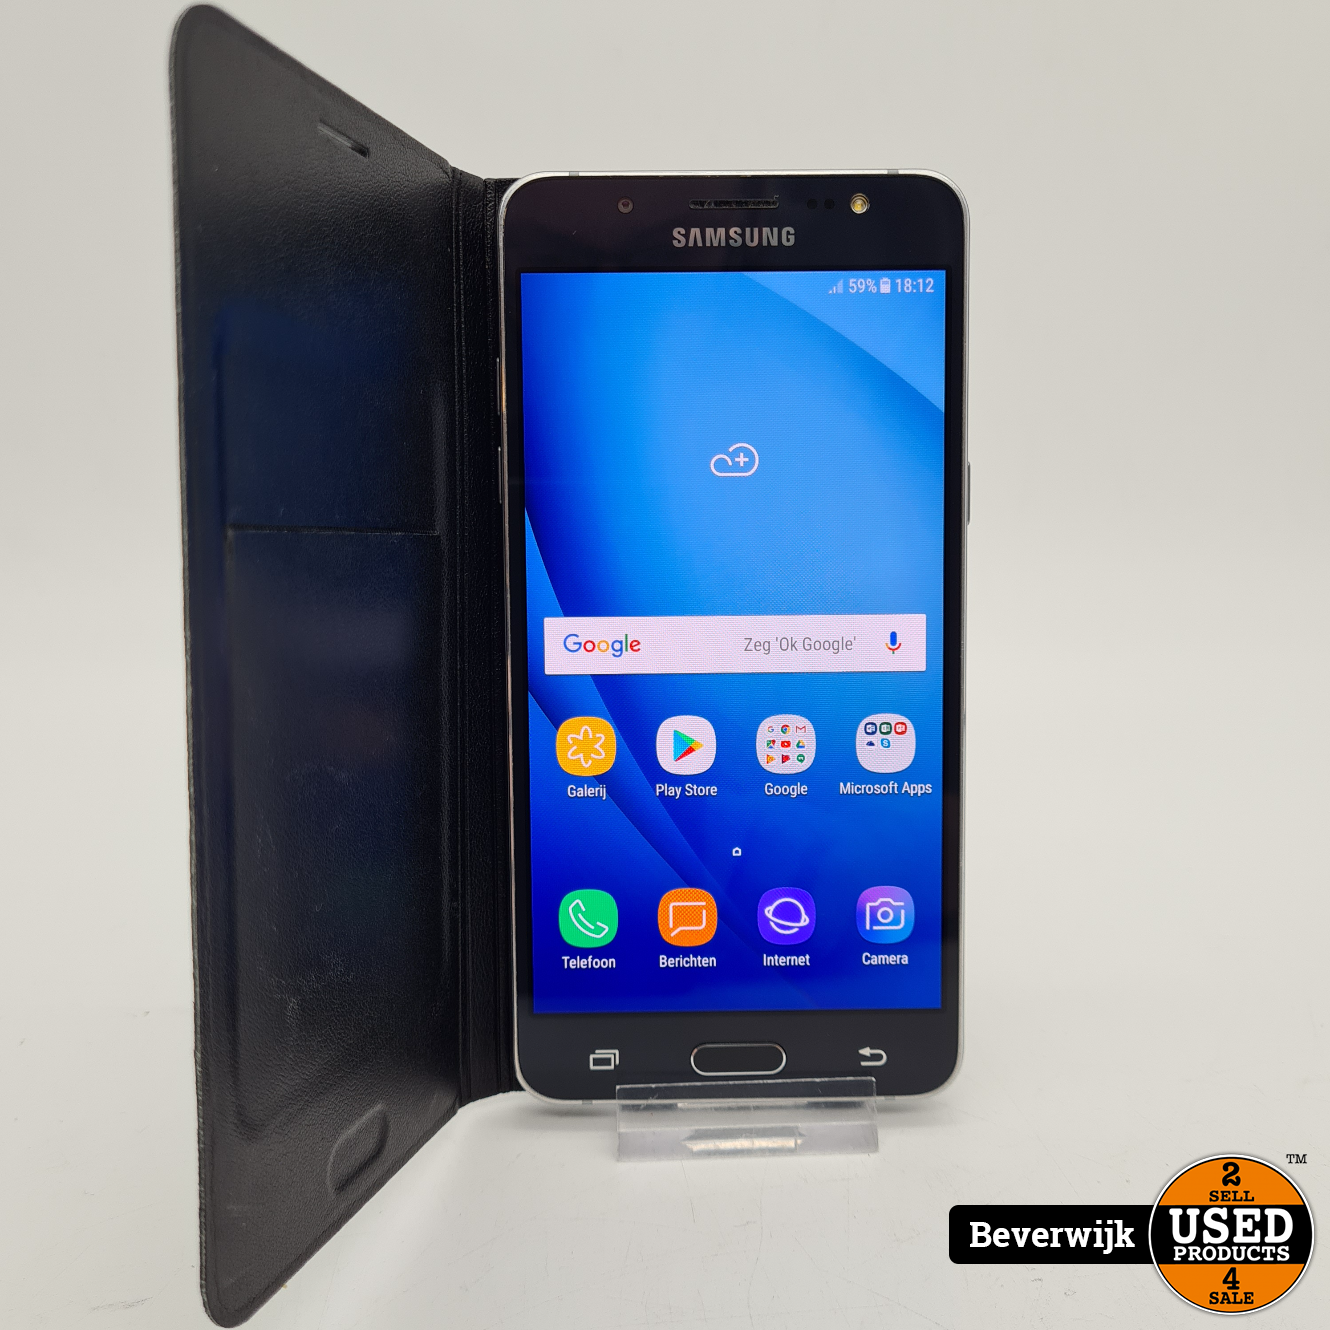 Ongeautoriseerd Onbelangrijk voorjaar Samsung Galaxy J5 2016 16GB Zwart - IN Goede Staat - Used Products Beverwijk